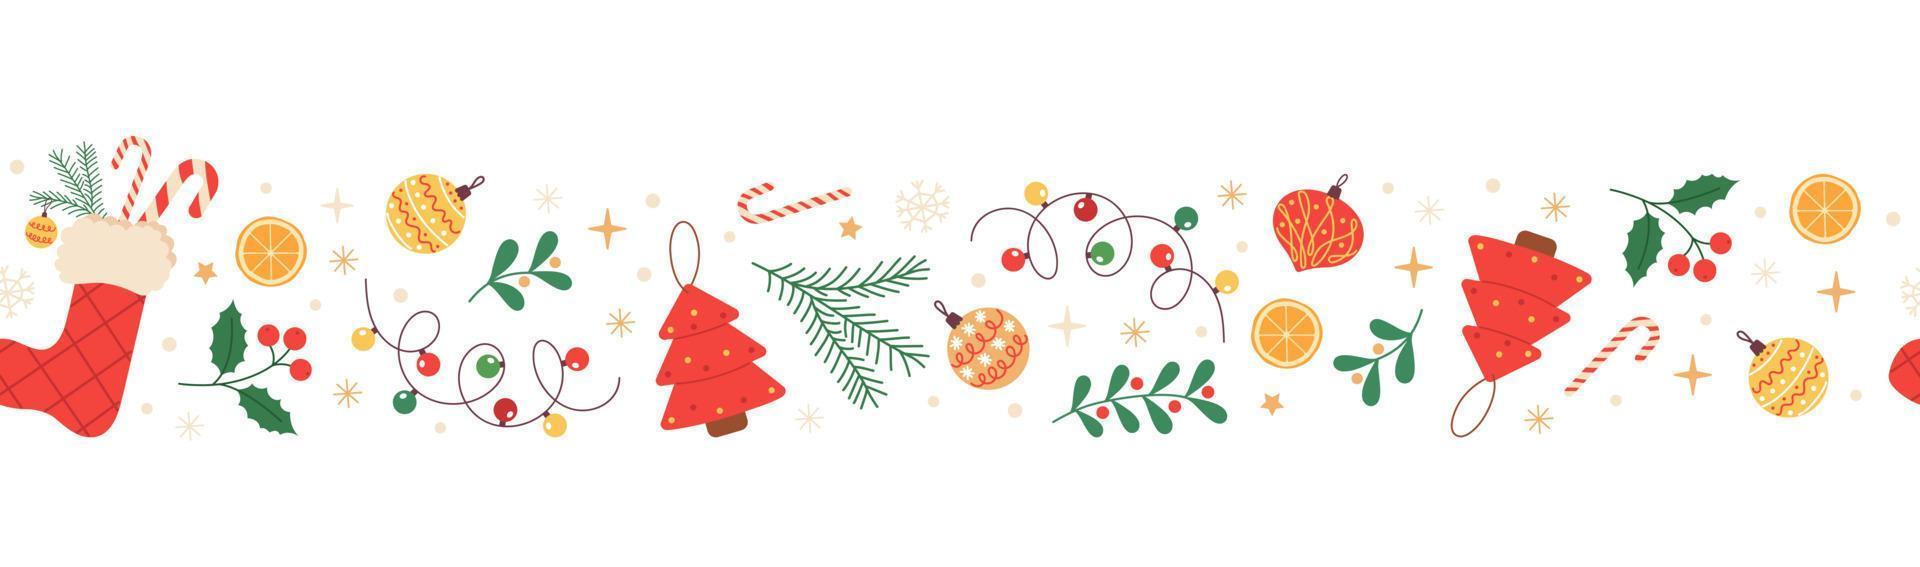 borde horizontal sin costuras de navidad con acebo, calcetín de navidad, copos de nieve, bastón de caramelo y adornos navideños. patrón festivo para tarjetas de felicitación, pancartas, invitaciones, textiles. vector